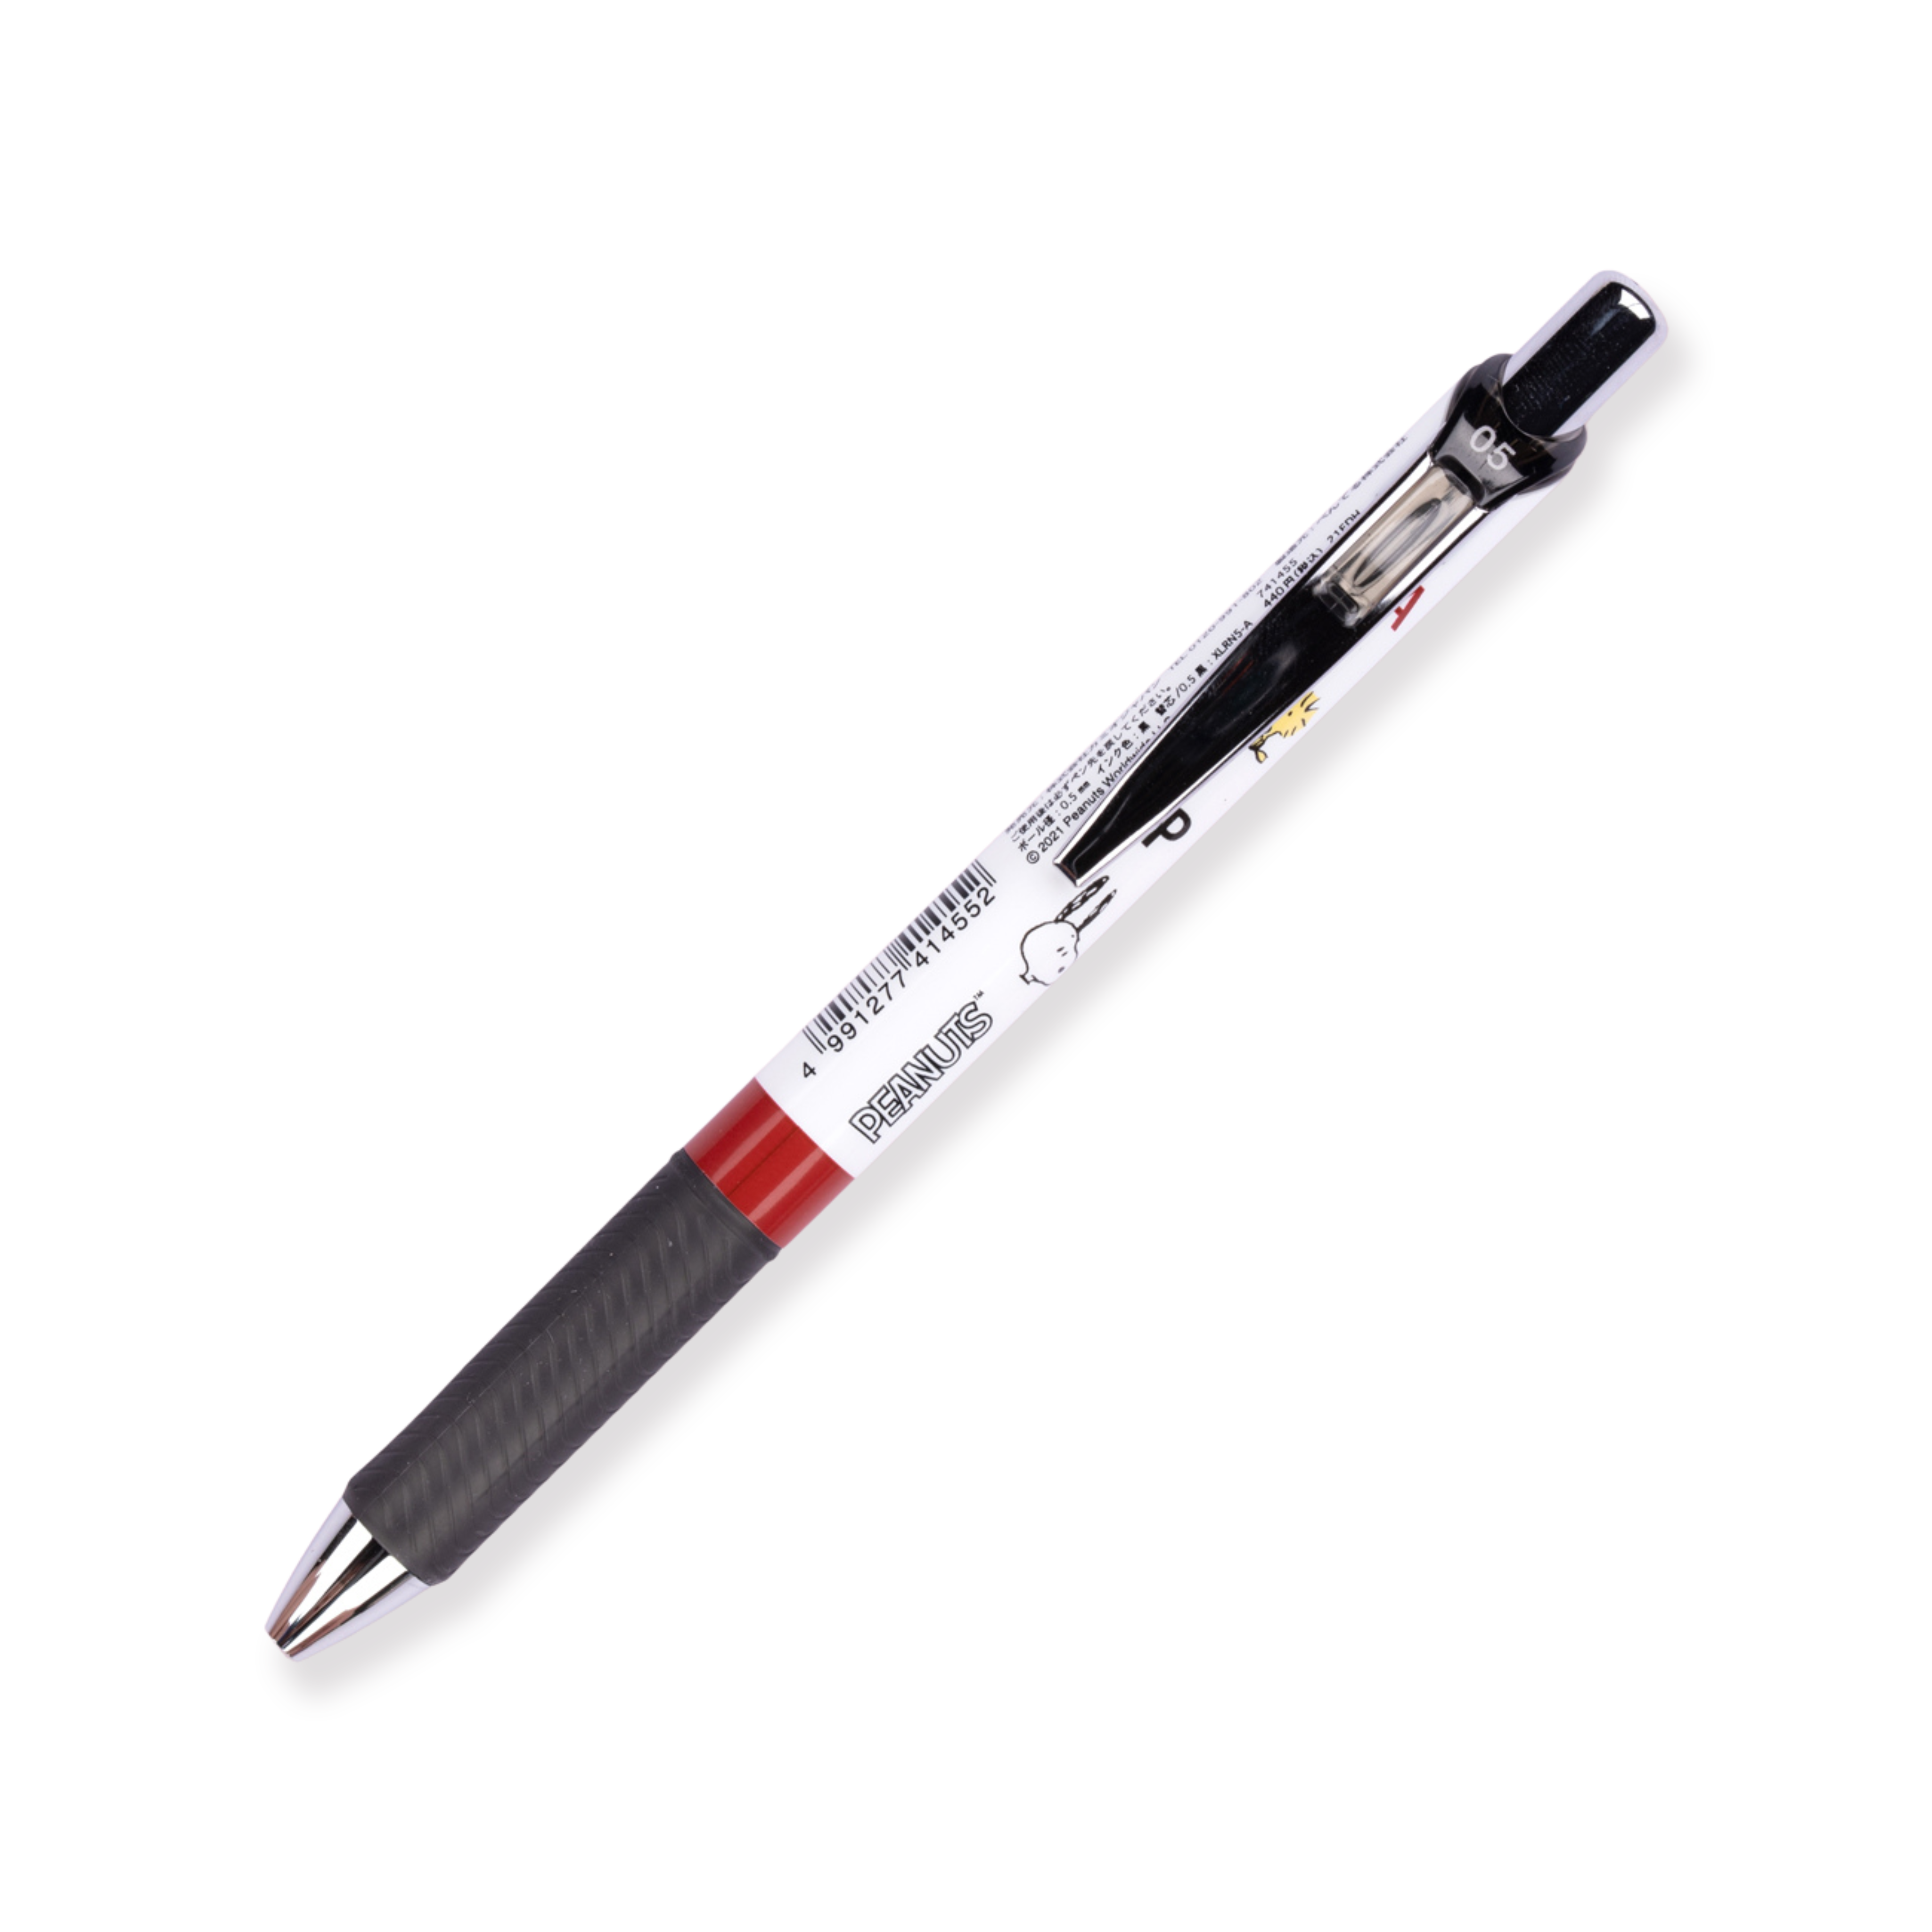 Bolígrafo de gel Pentel EnerGel Snoopy de edición limitada - 0,5 mm - Tinta negra - Agarre negro